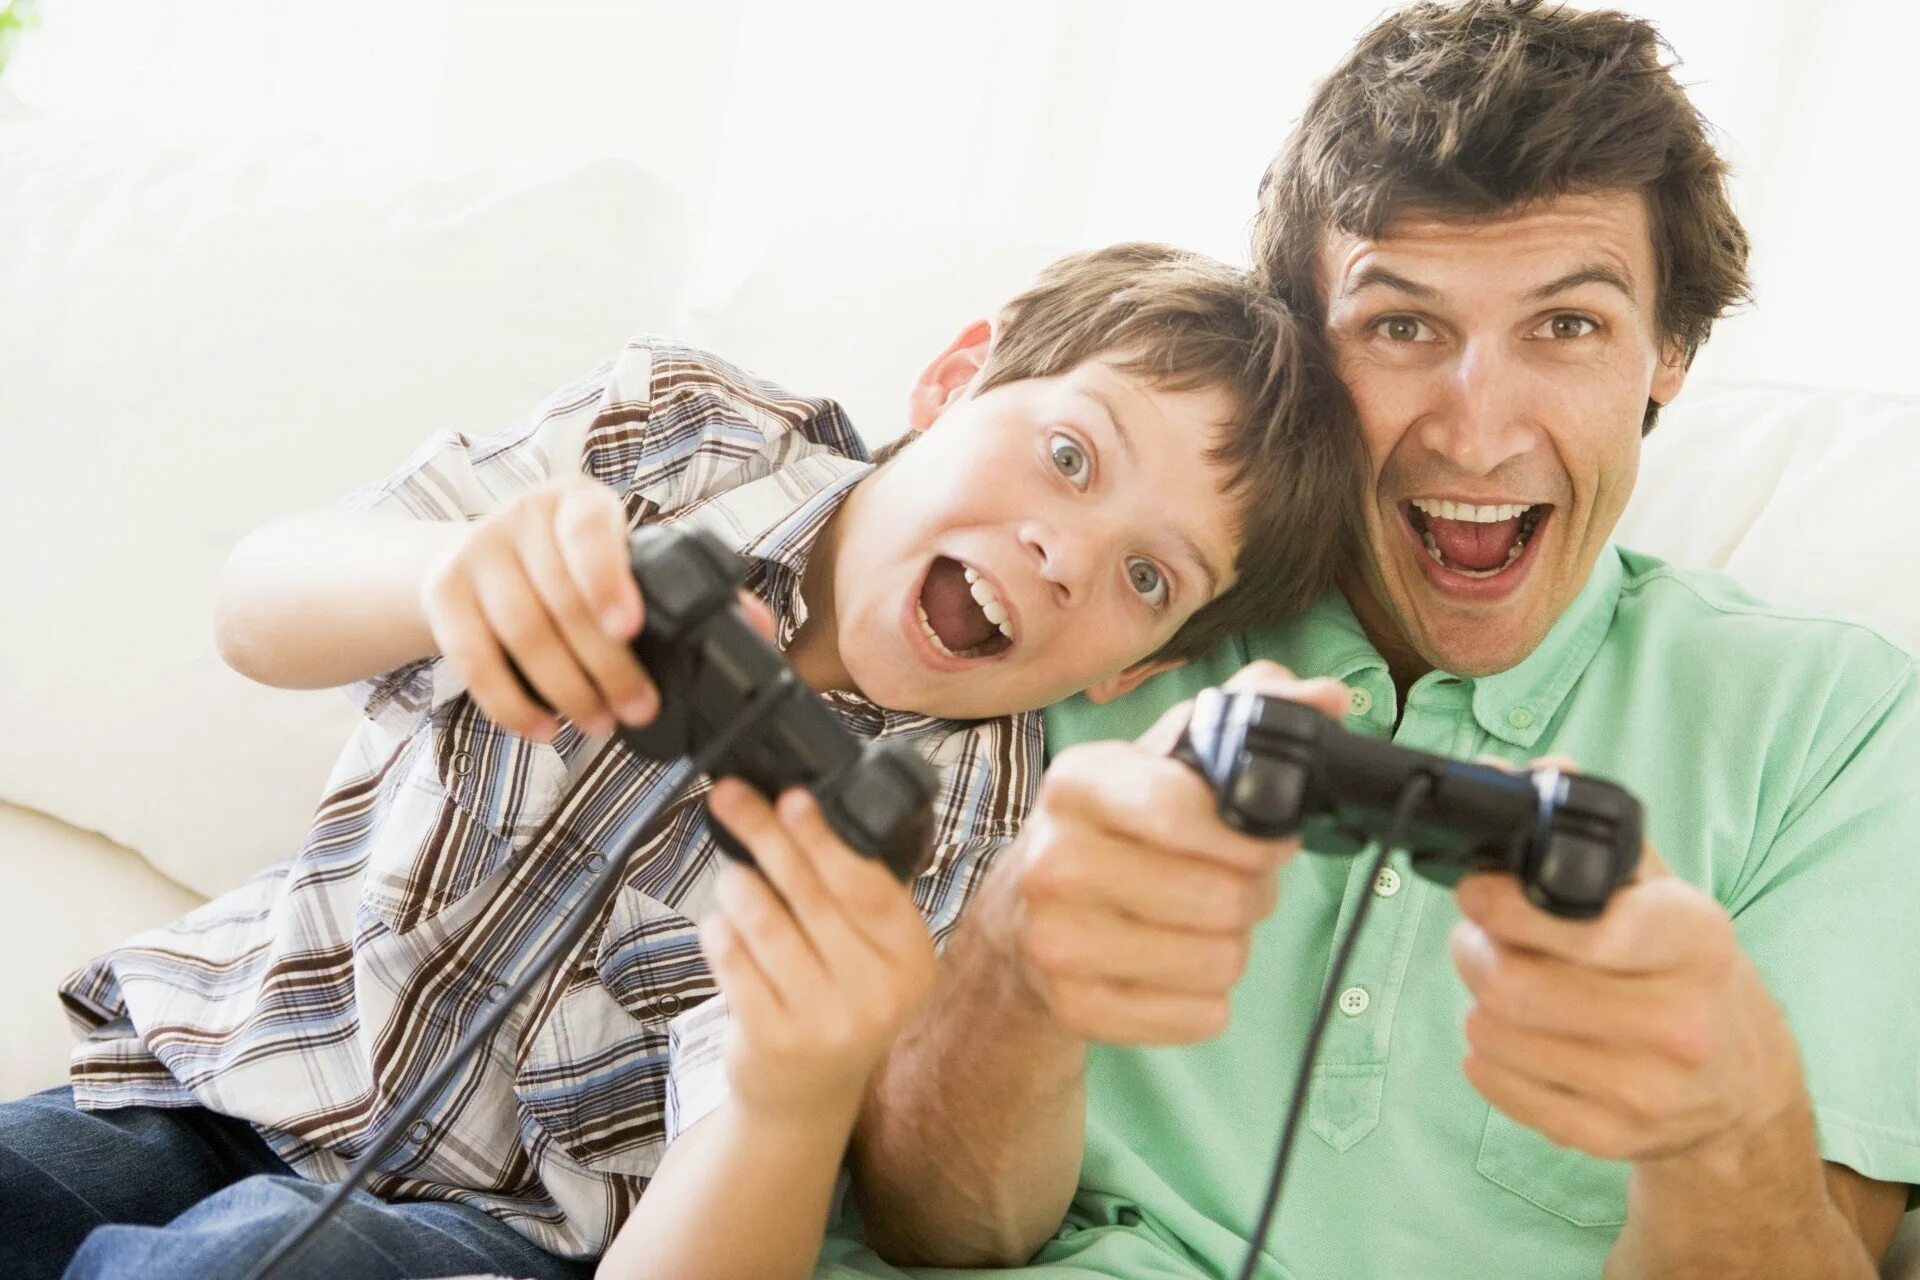 Daddy папа. Компьютерные игры для детей. Отец и сын. Дети играющие в Видеоигры. Радостные дети и компьютерные игры.